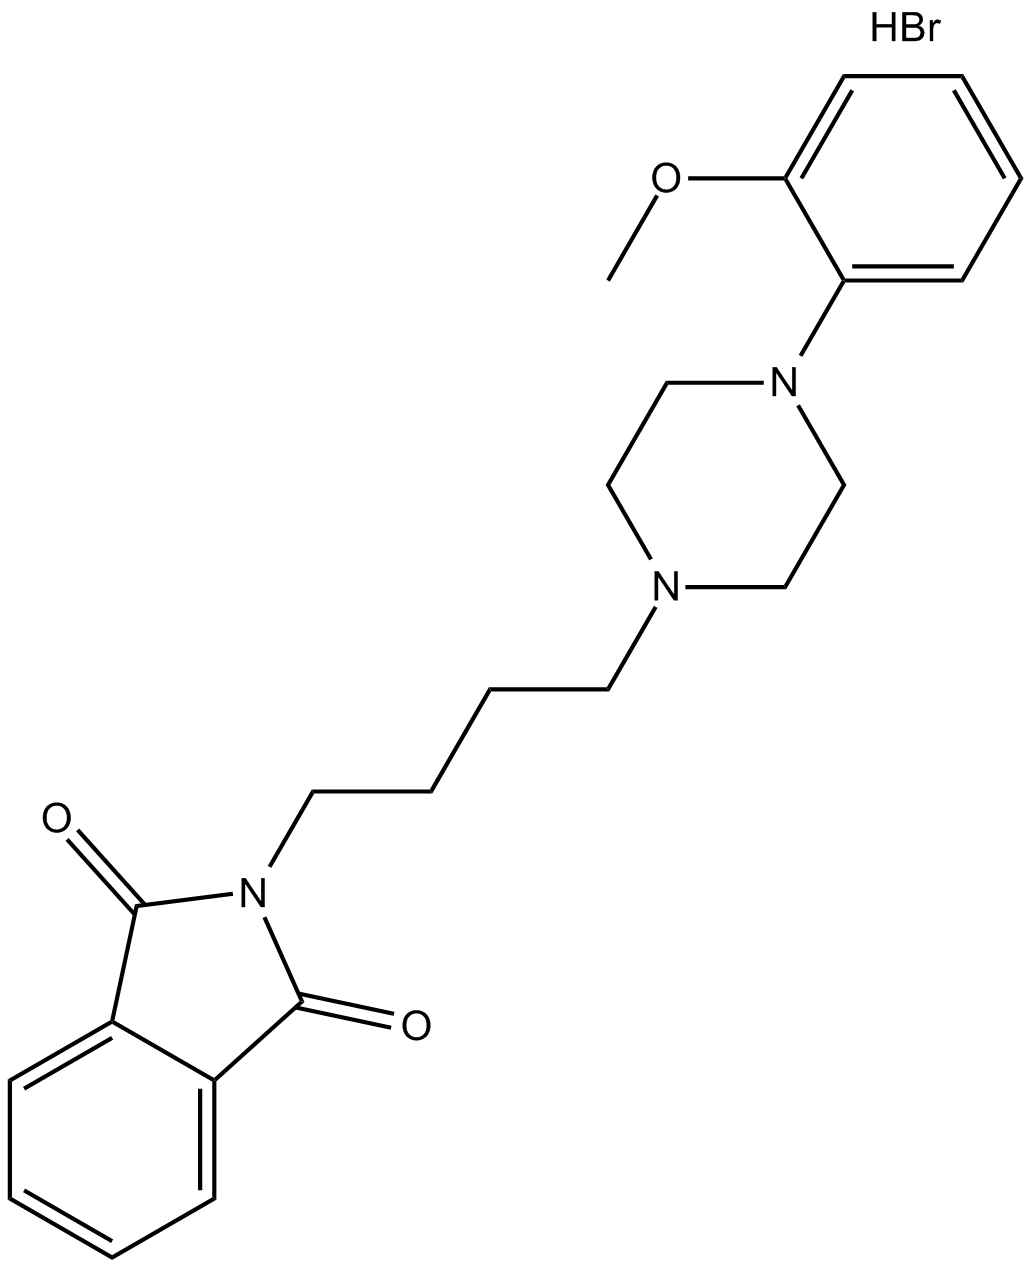 NAN-190 hydrobromide